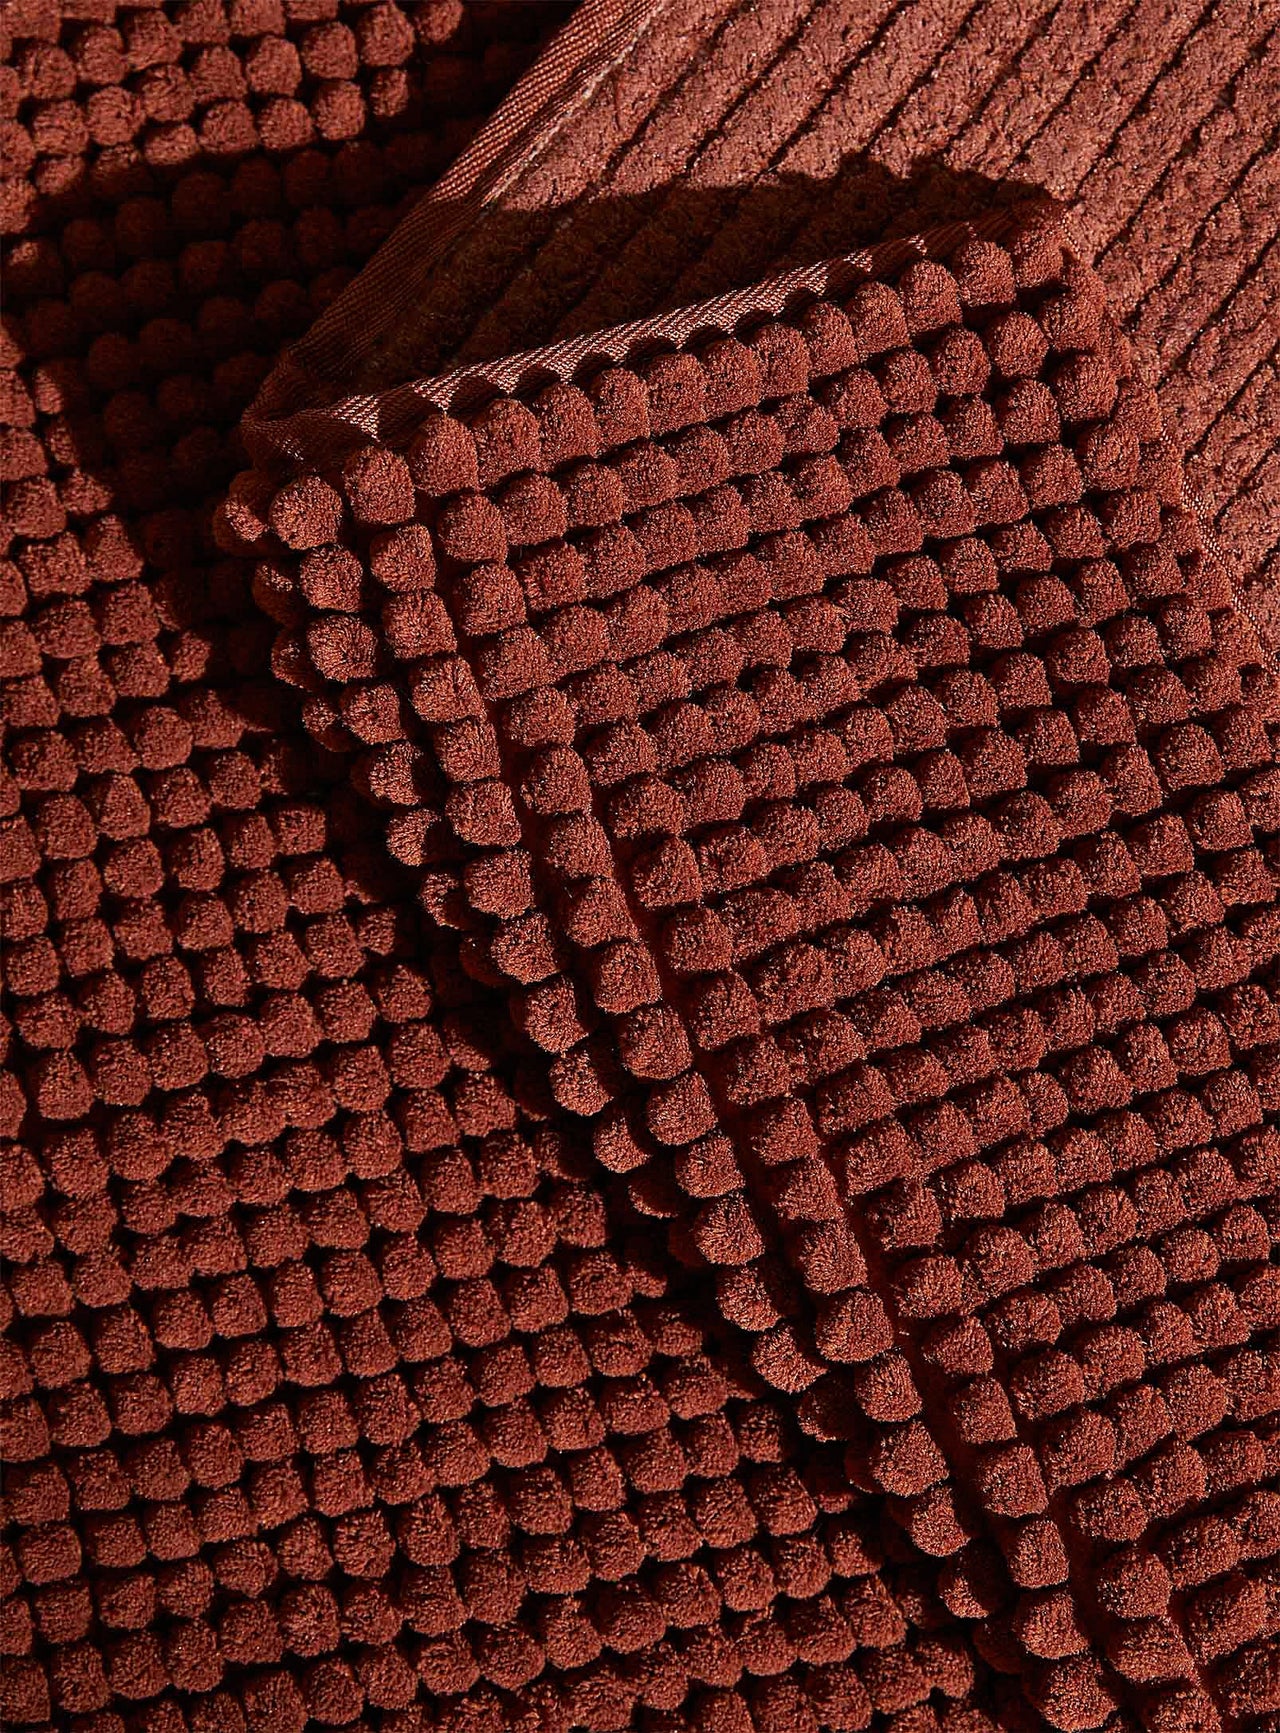 Monochrome caterpillar bath mat